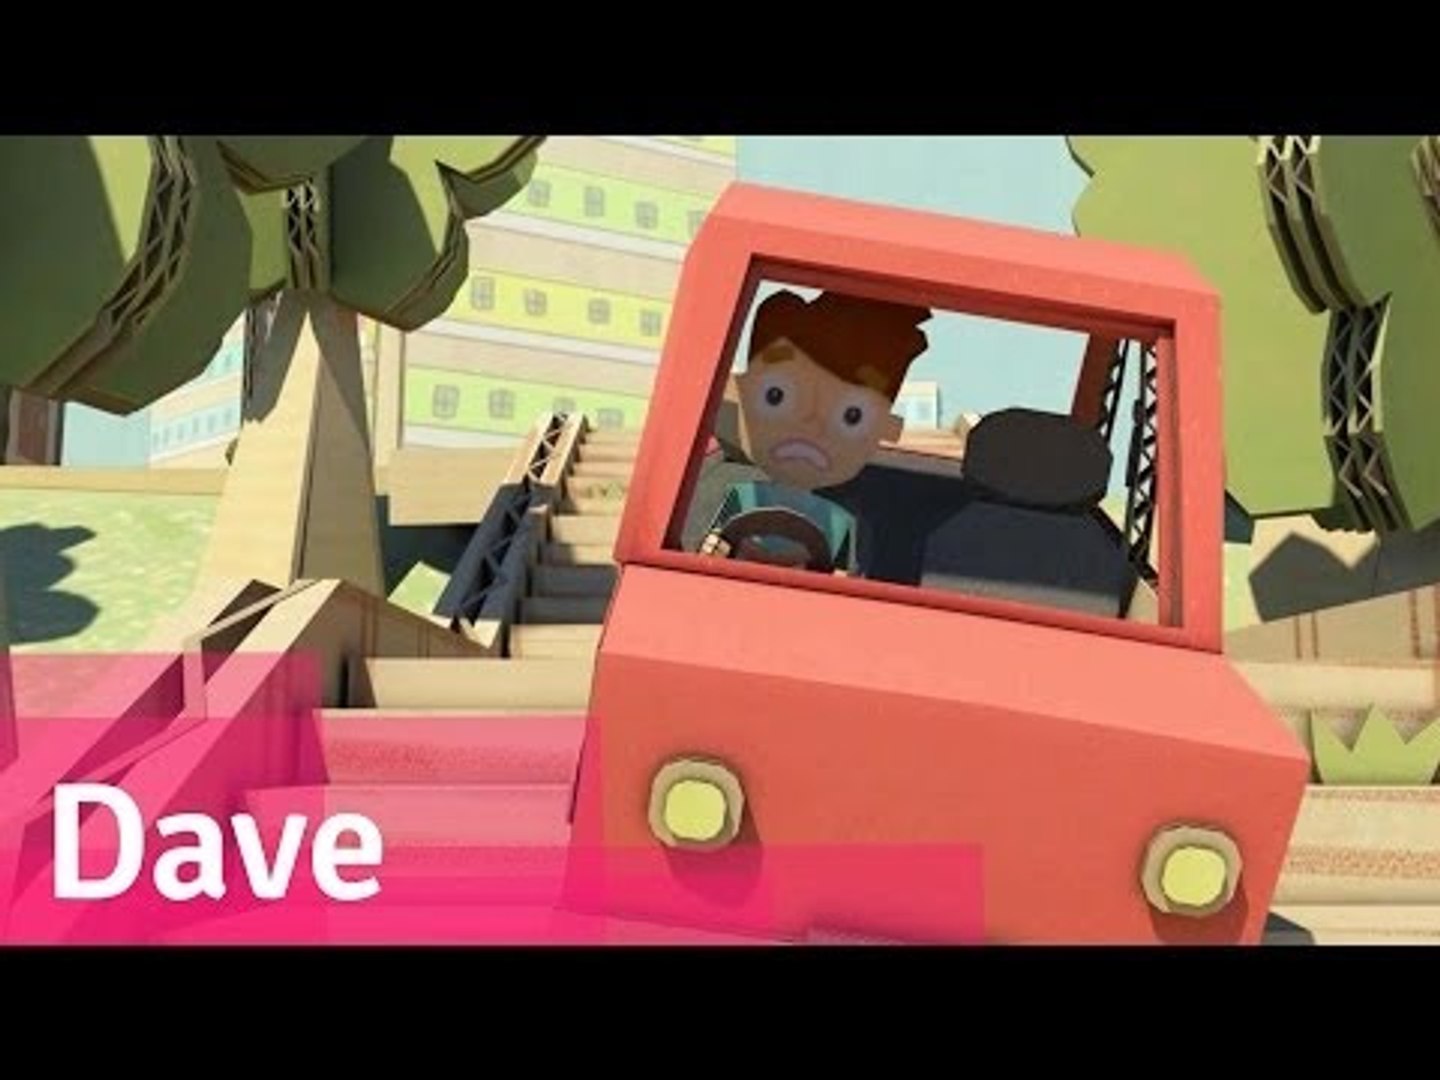 Dave - Animation Short Film // Viddsee